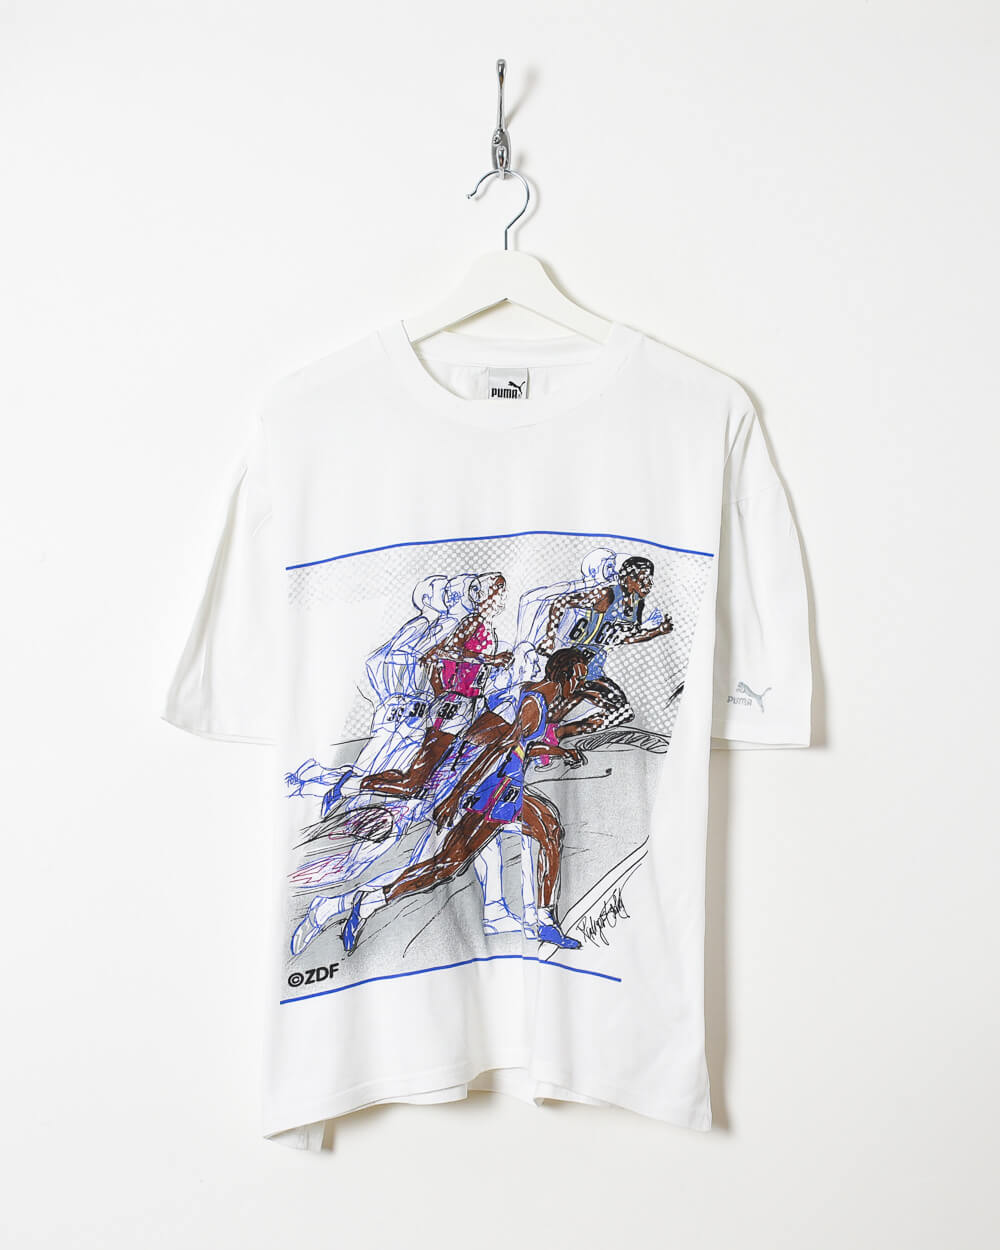 White Puma Running T-Shirt - Medium